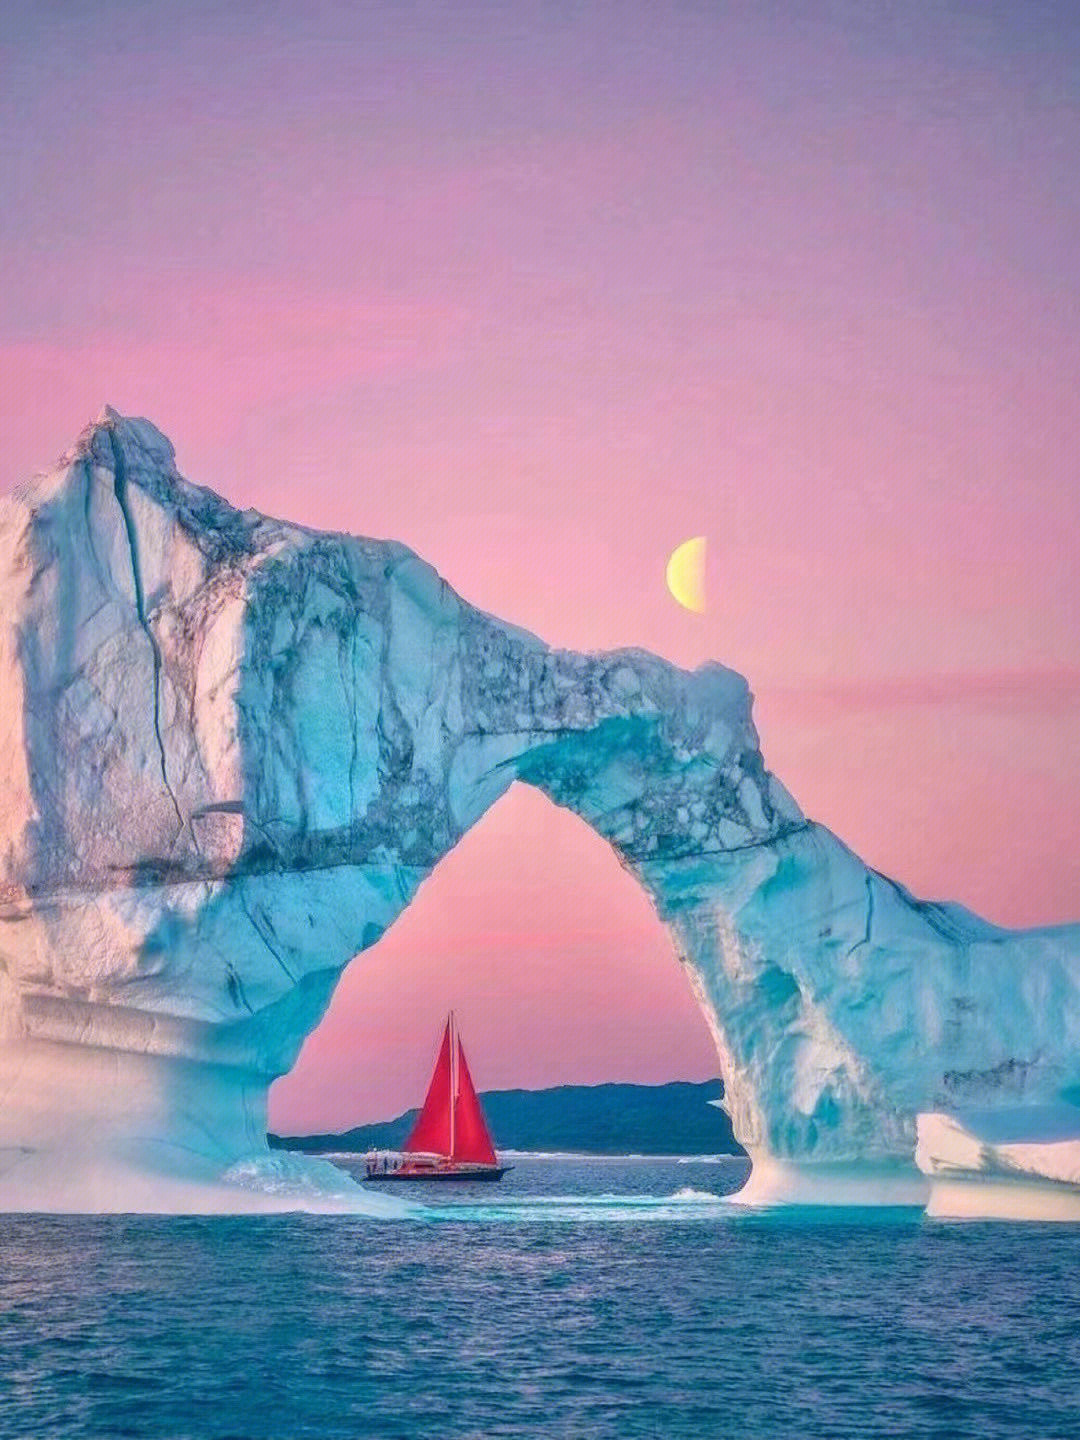 丹麦格陵兰岛:世界尽头的冰雪童话世界,乘6061种特6969船破开